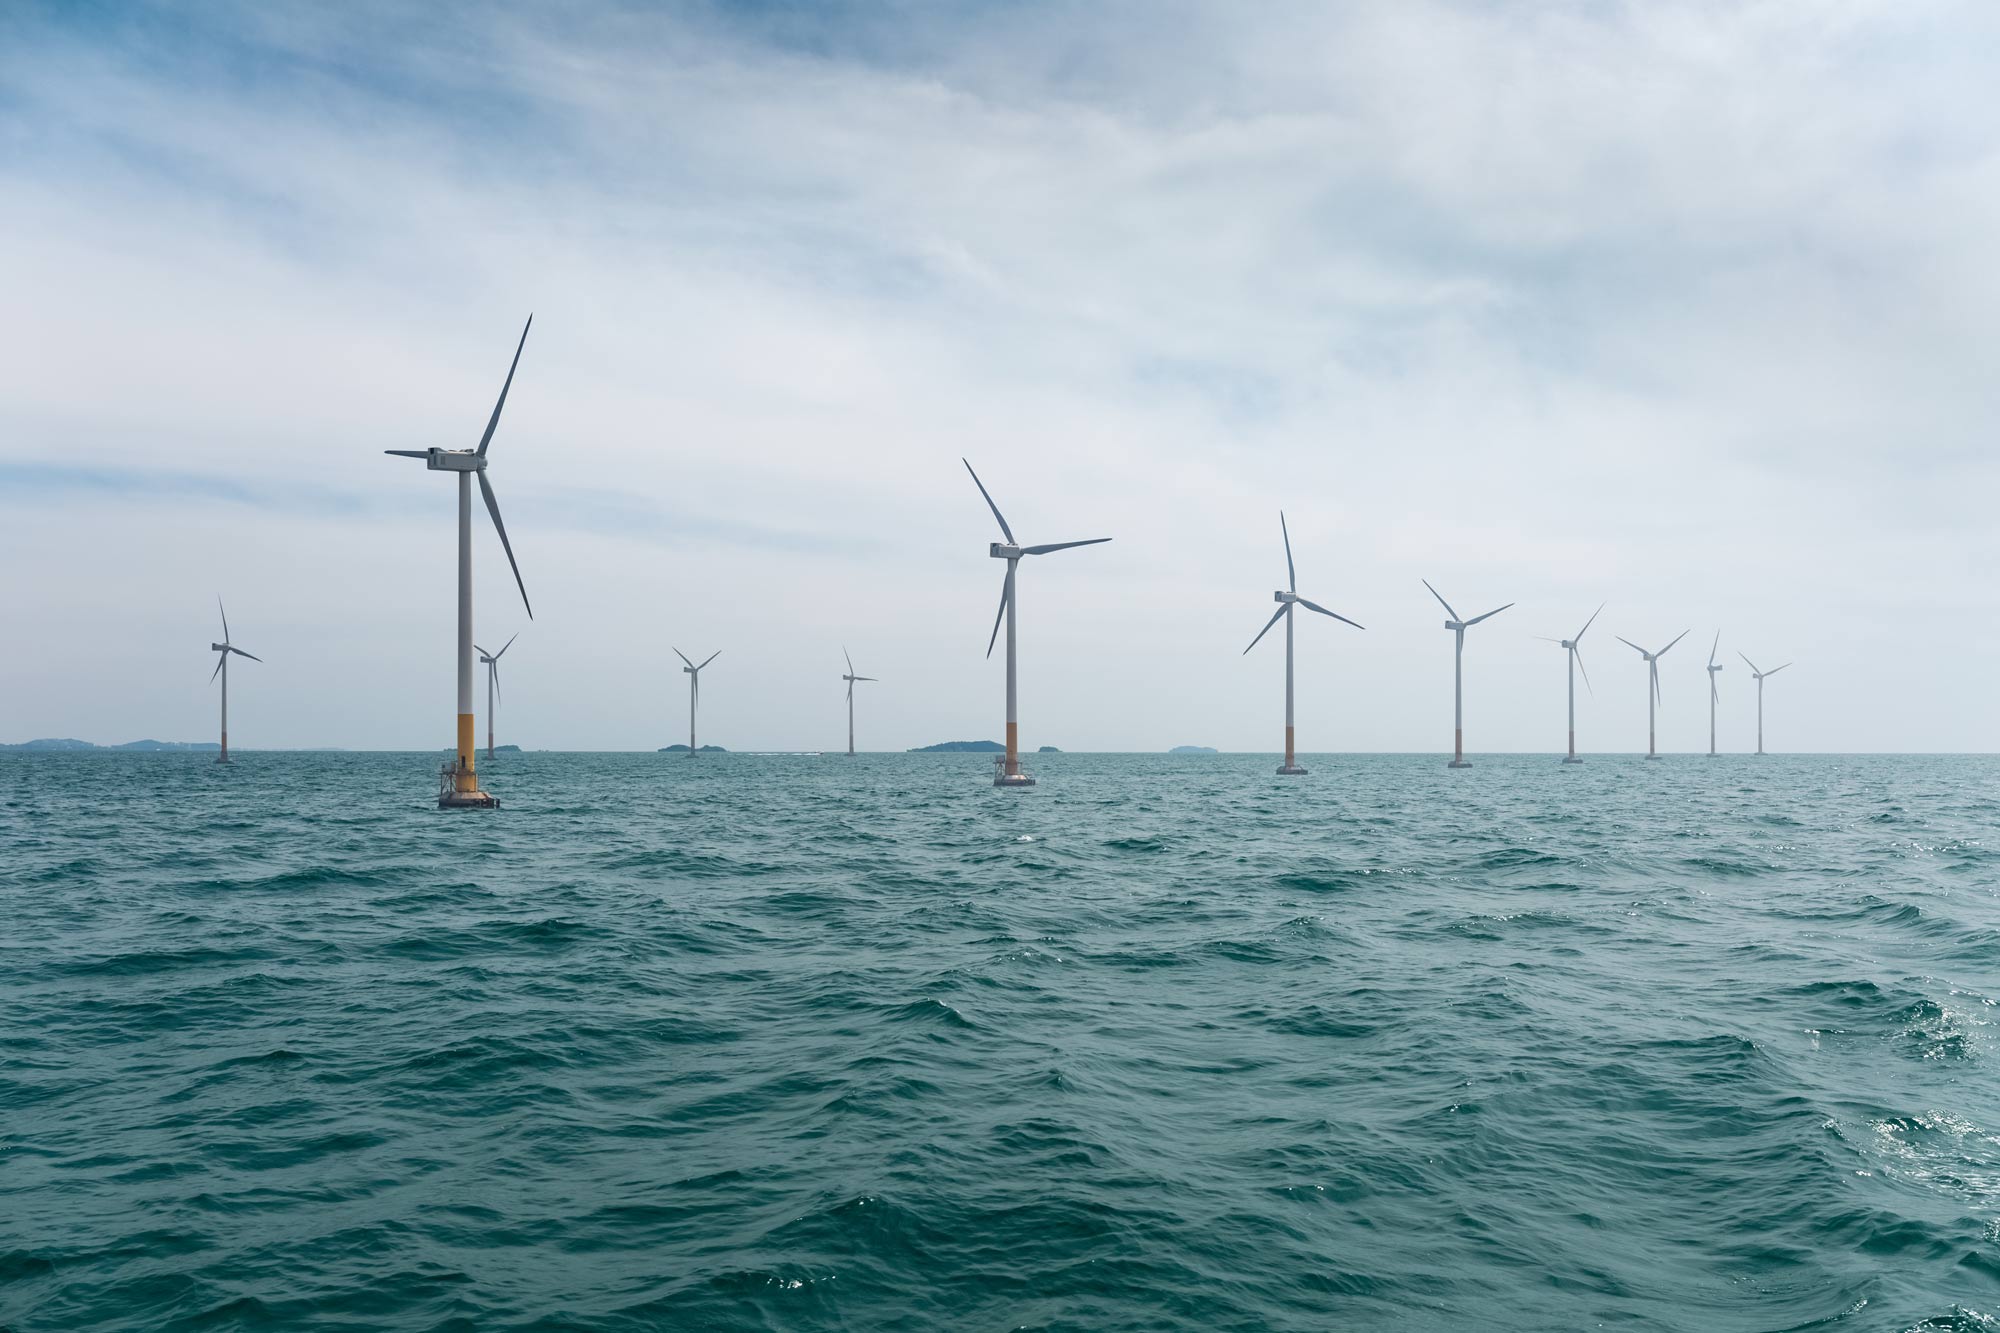 雅虎:来自海上的电力:漂浮的风力涡轮机将很快点缀俄勒冈州的南海岸